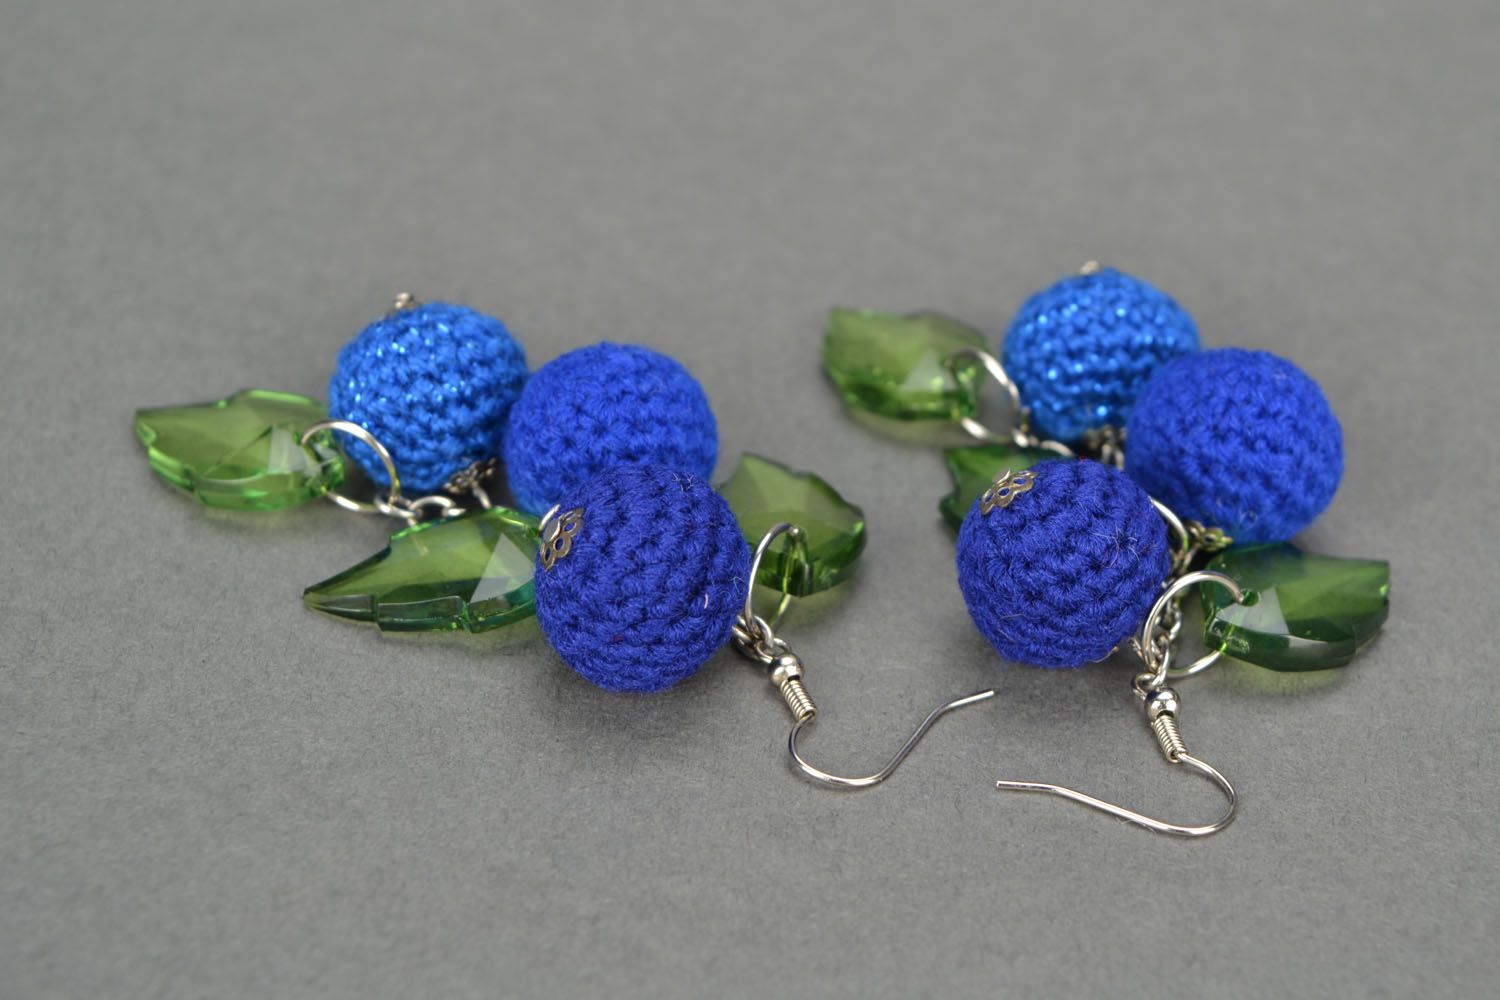 Lace crochet earrings Blue Berry photo 4